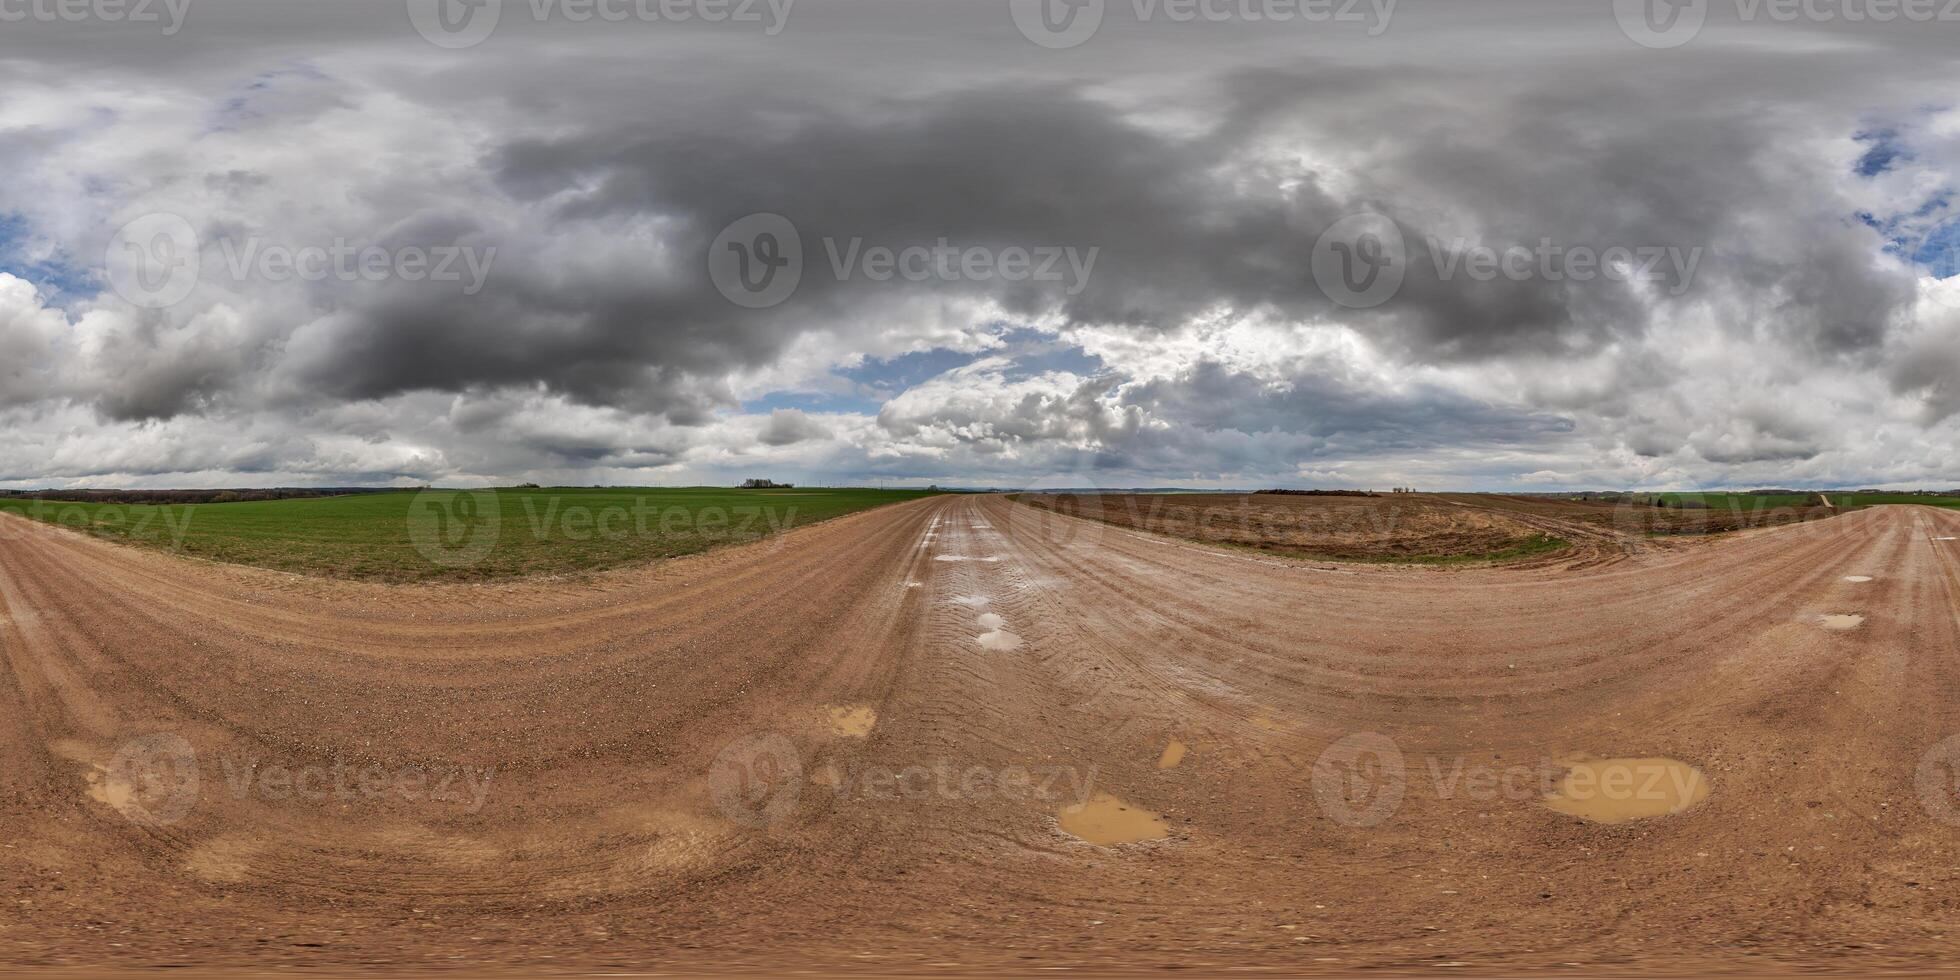 hdri 360 panorama Aan nat grind weg met plassen tussen velden in voorjaar naar dag met storm wolken in equirectangular vol naadloos bolvormig projectie, voor vr ar virtueel realiteit inhoud foto